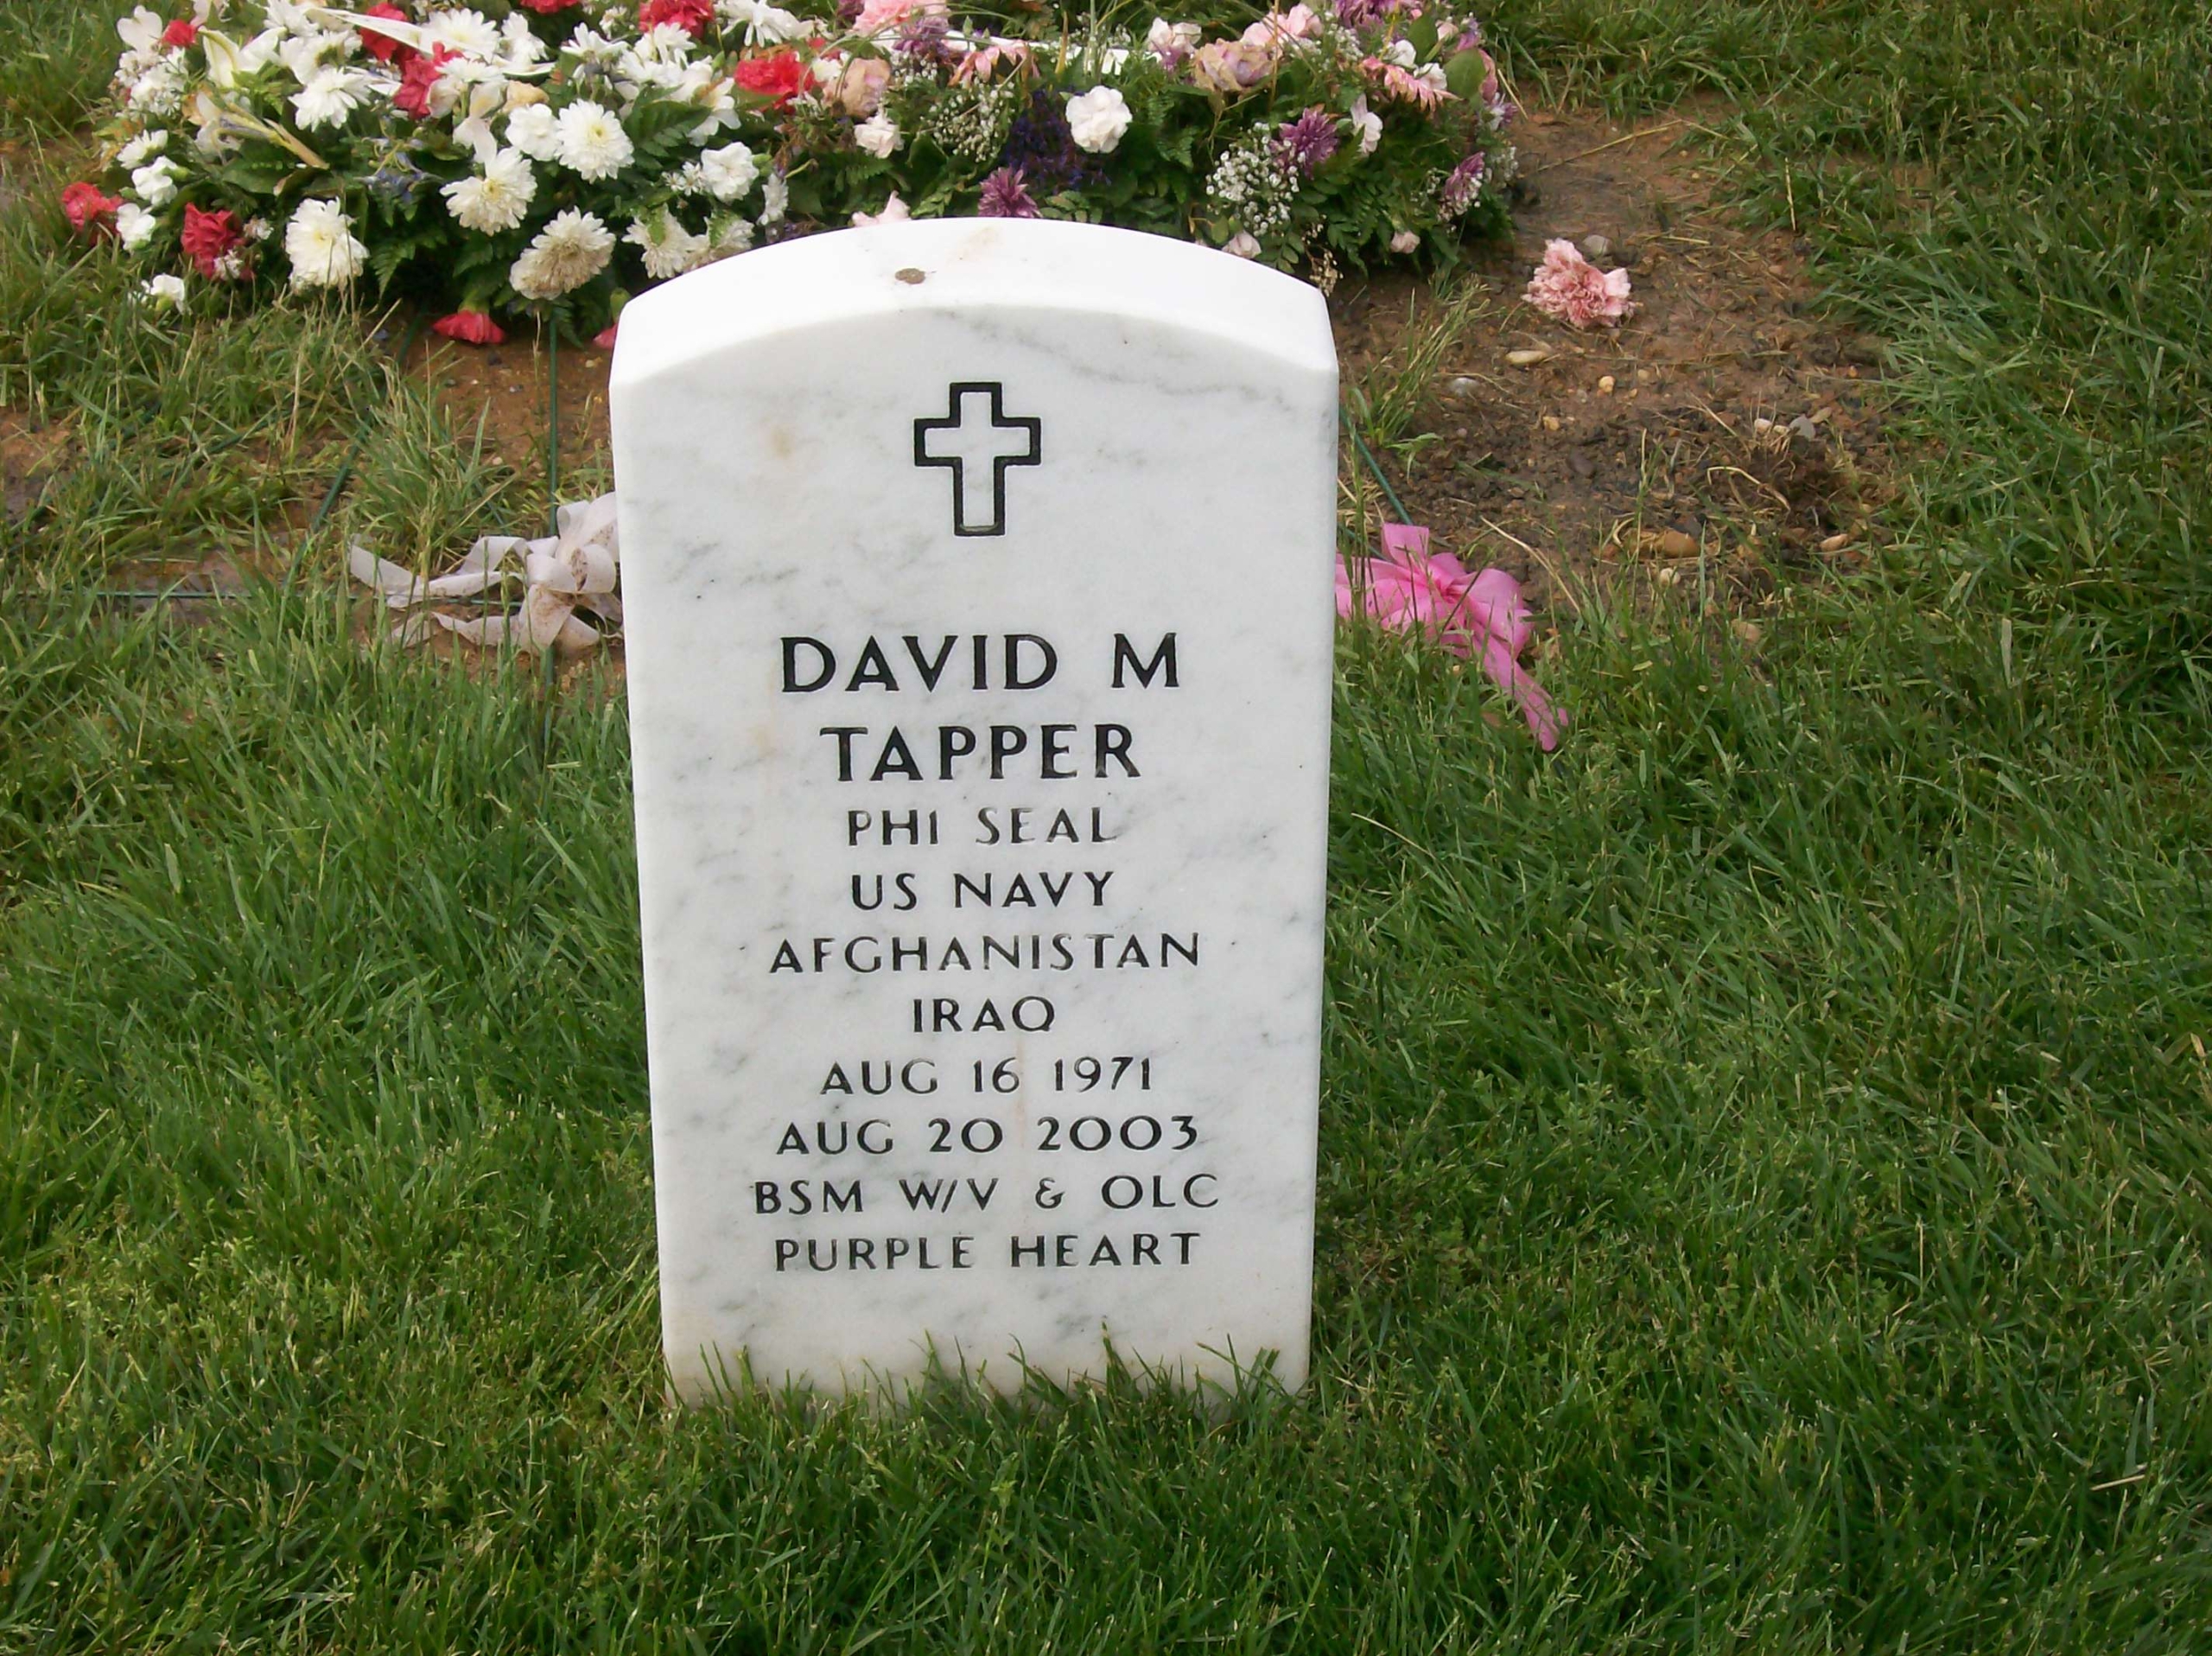 dmtapper-gravesite-photo-may-2008-001